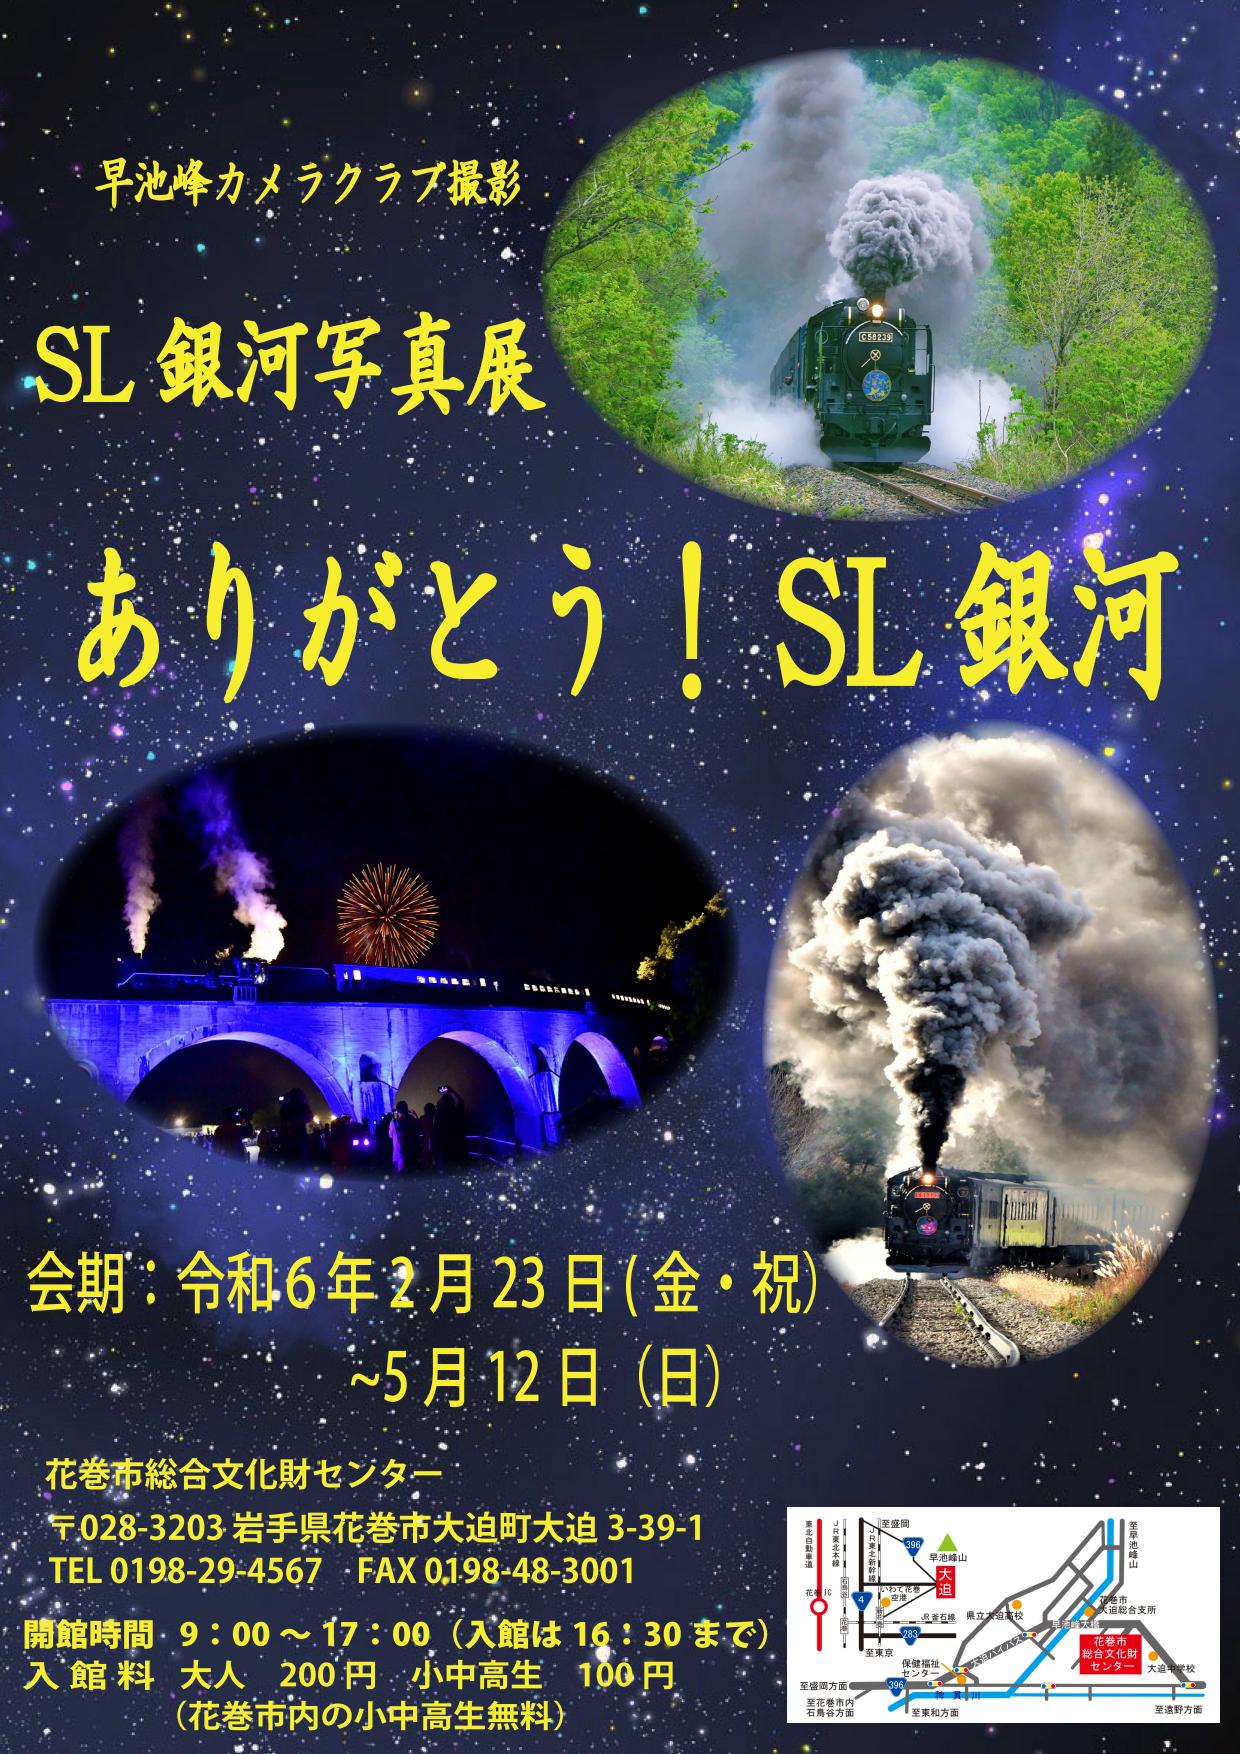 【花巻市総合文化財センター】企画展「SL銀河写真展 ーありがとう！SL銀河ー」